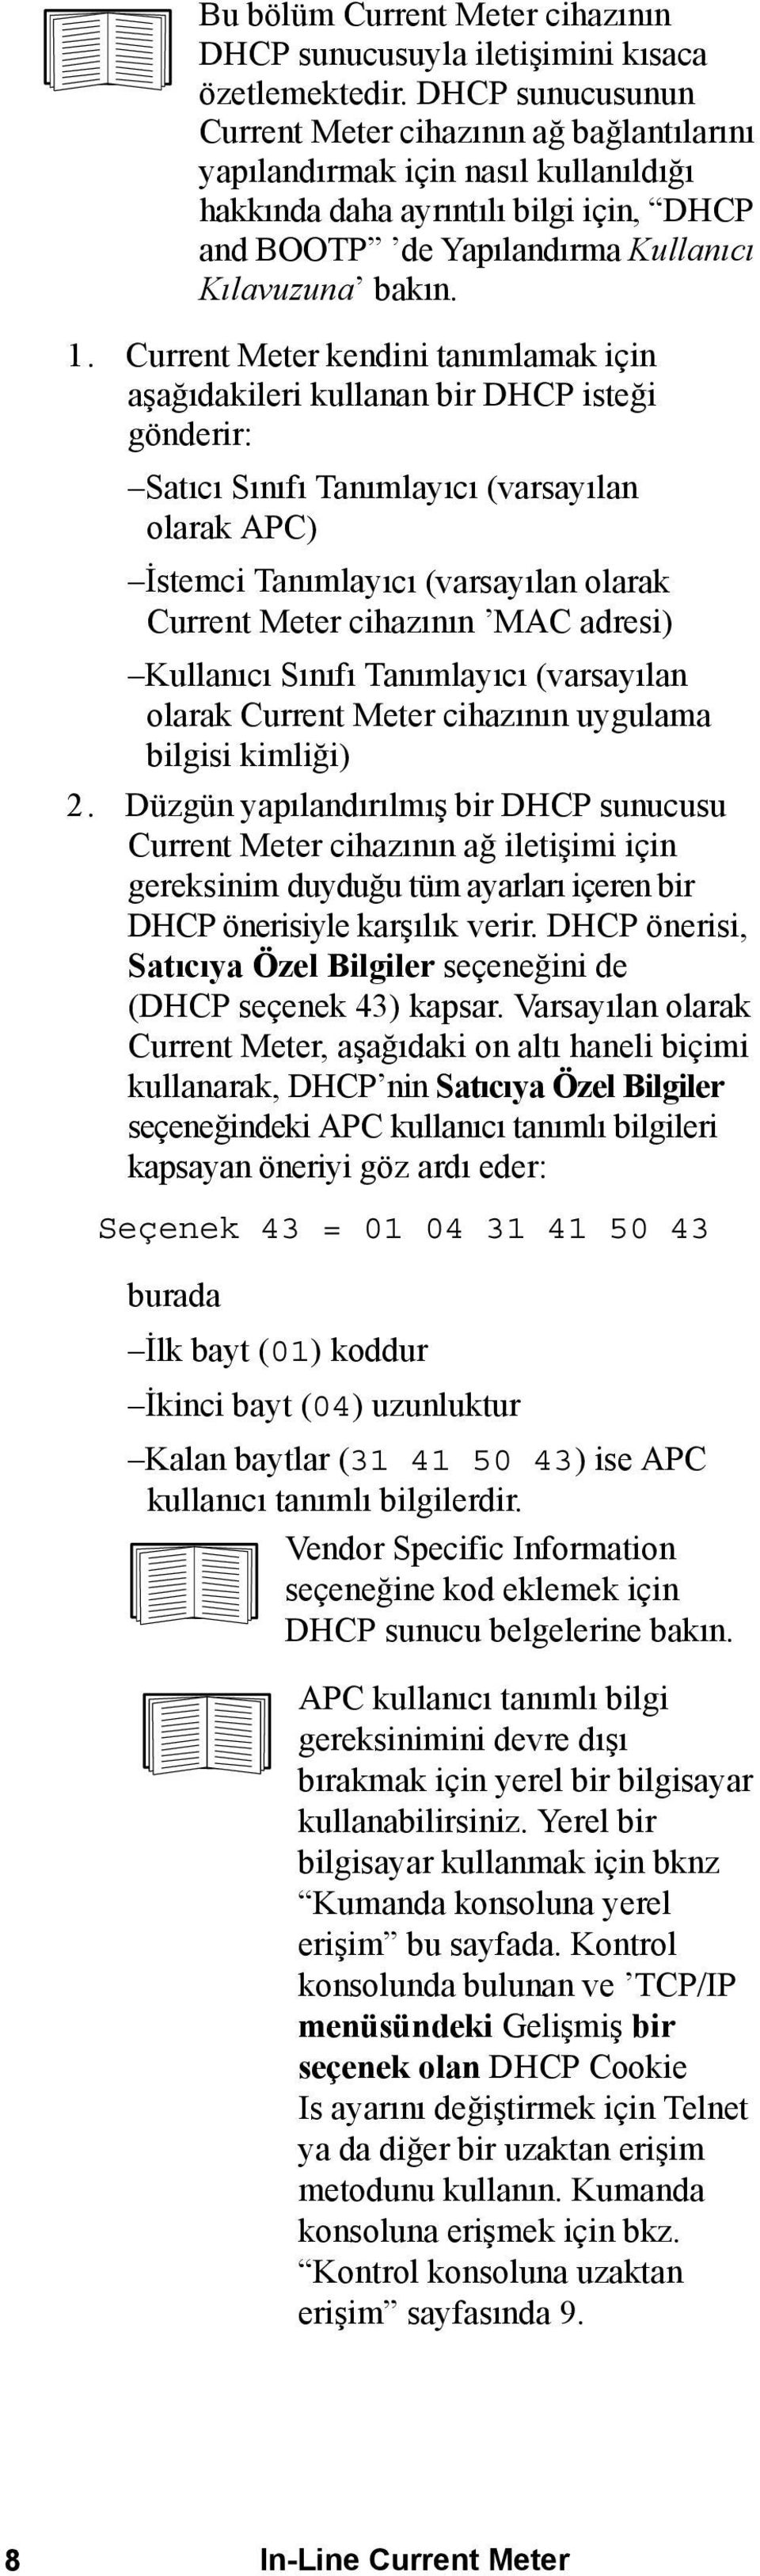 Current Meter kendini tanımlamak için aşağıdakileri kullanan bir DHCP isteği gönderir: Satıcı Sınıfı Tanımlayıcı (varsayılan olarak APC) İstemci Tanımlayıcı (varsayılan olarak Current Meter cihazının